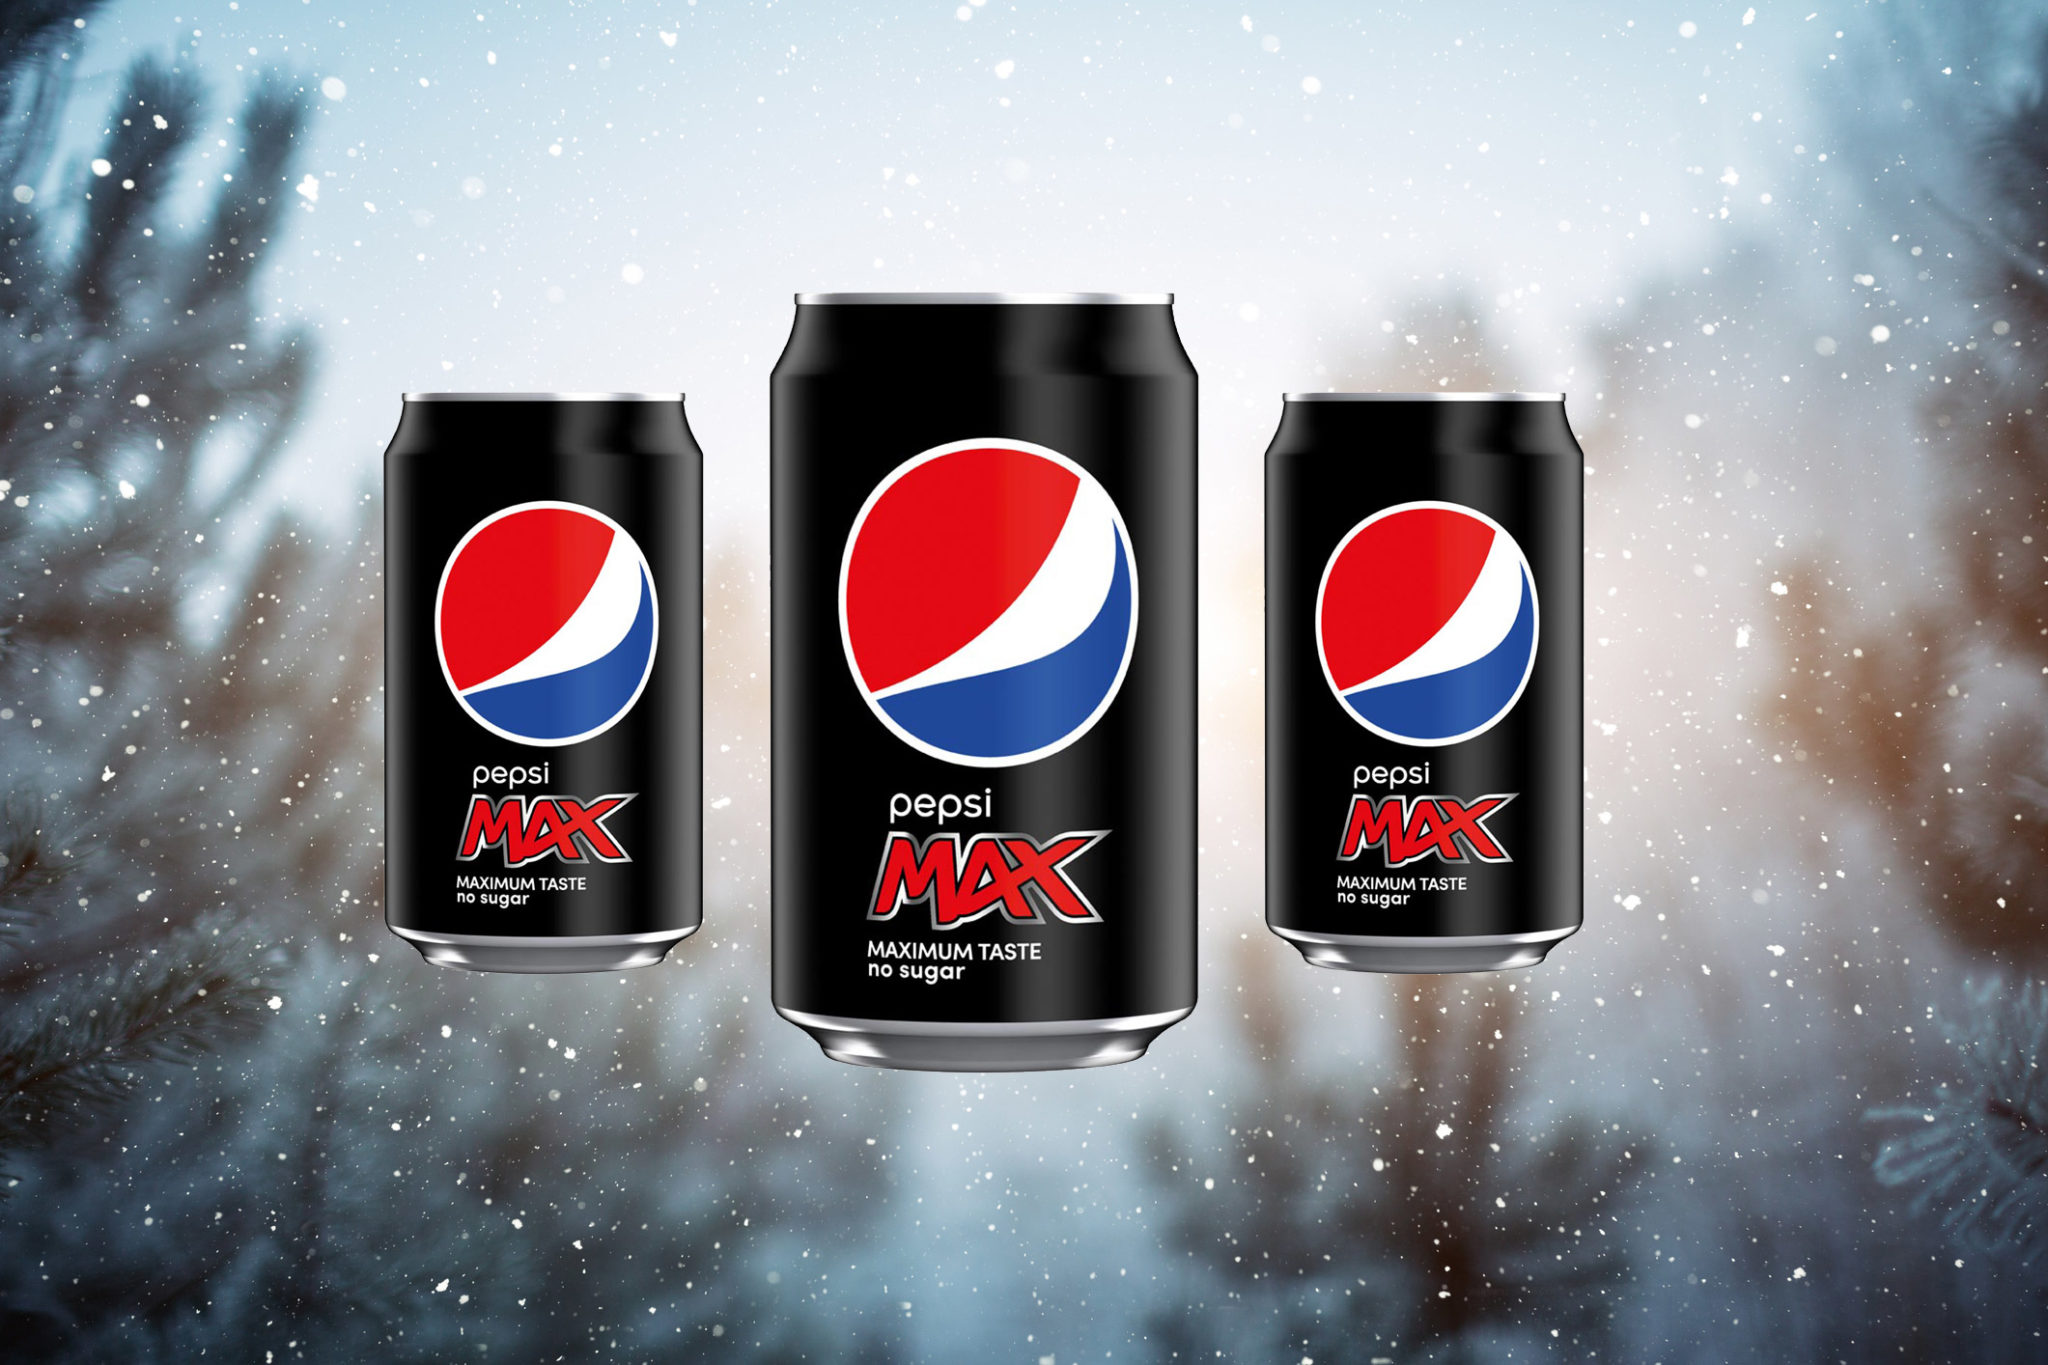 Pepsi Max TV ad Christmas product